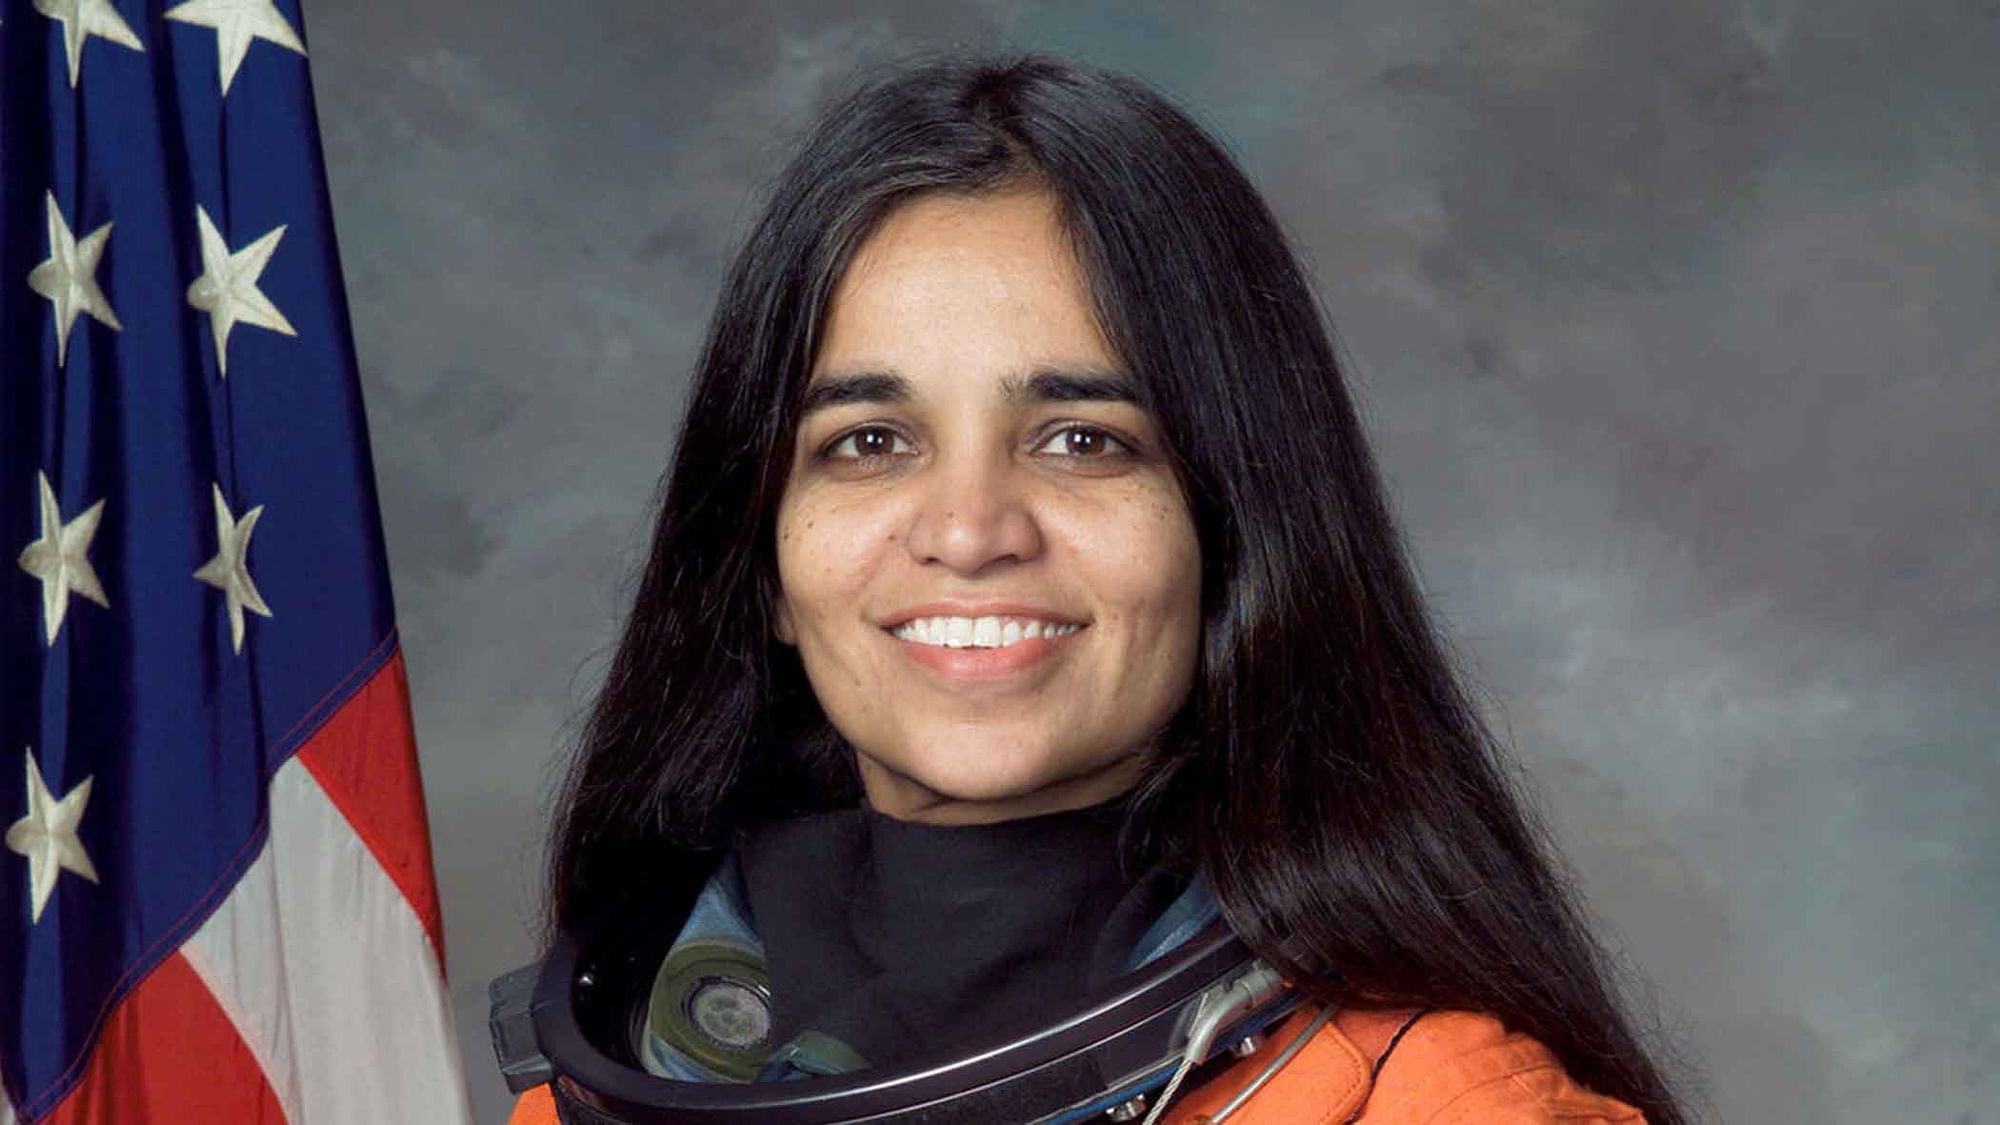 अंतरिक्ष में पहुंचने वाली पहली भारतीय महिला कल्पना चावला ने देश का गौरव बढ़ाया. 